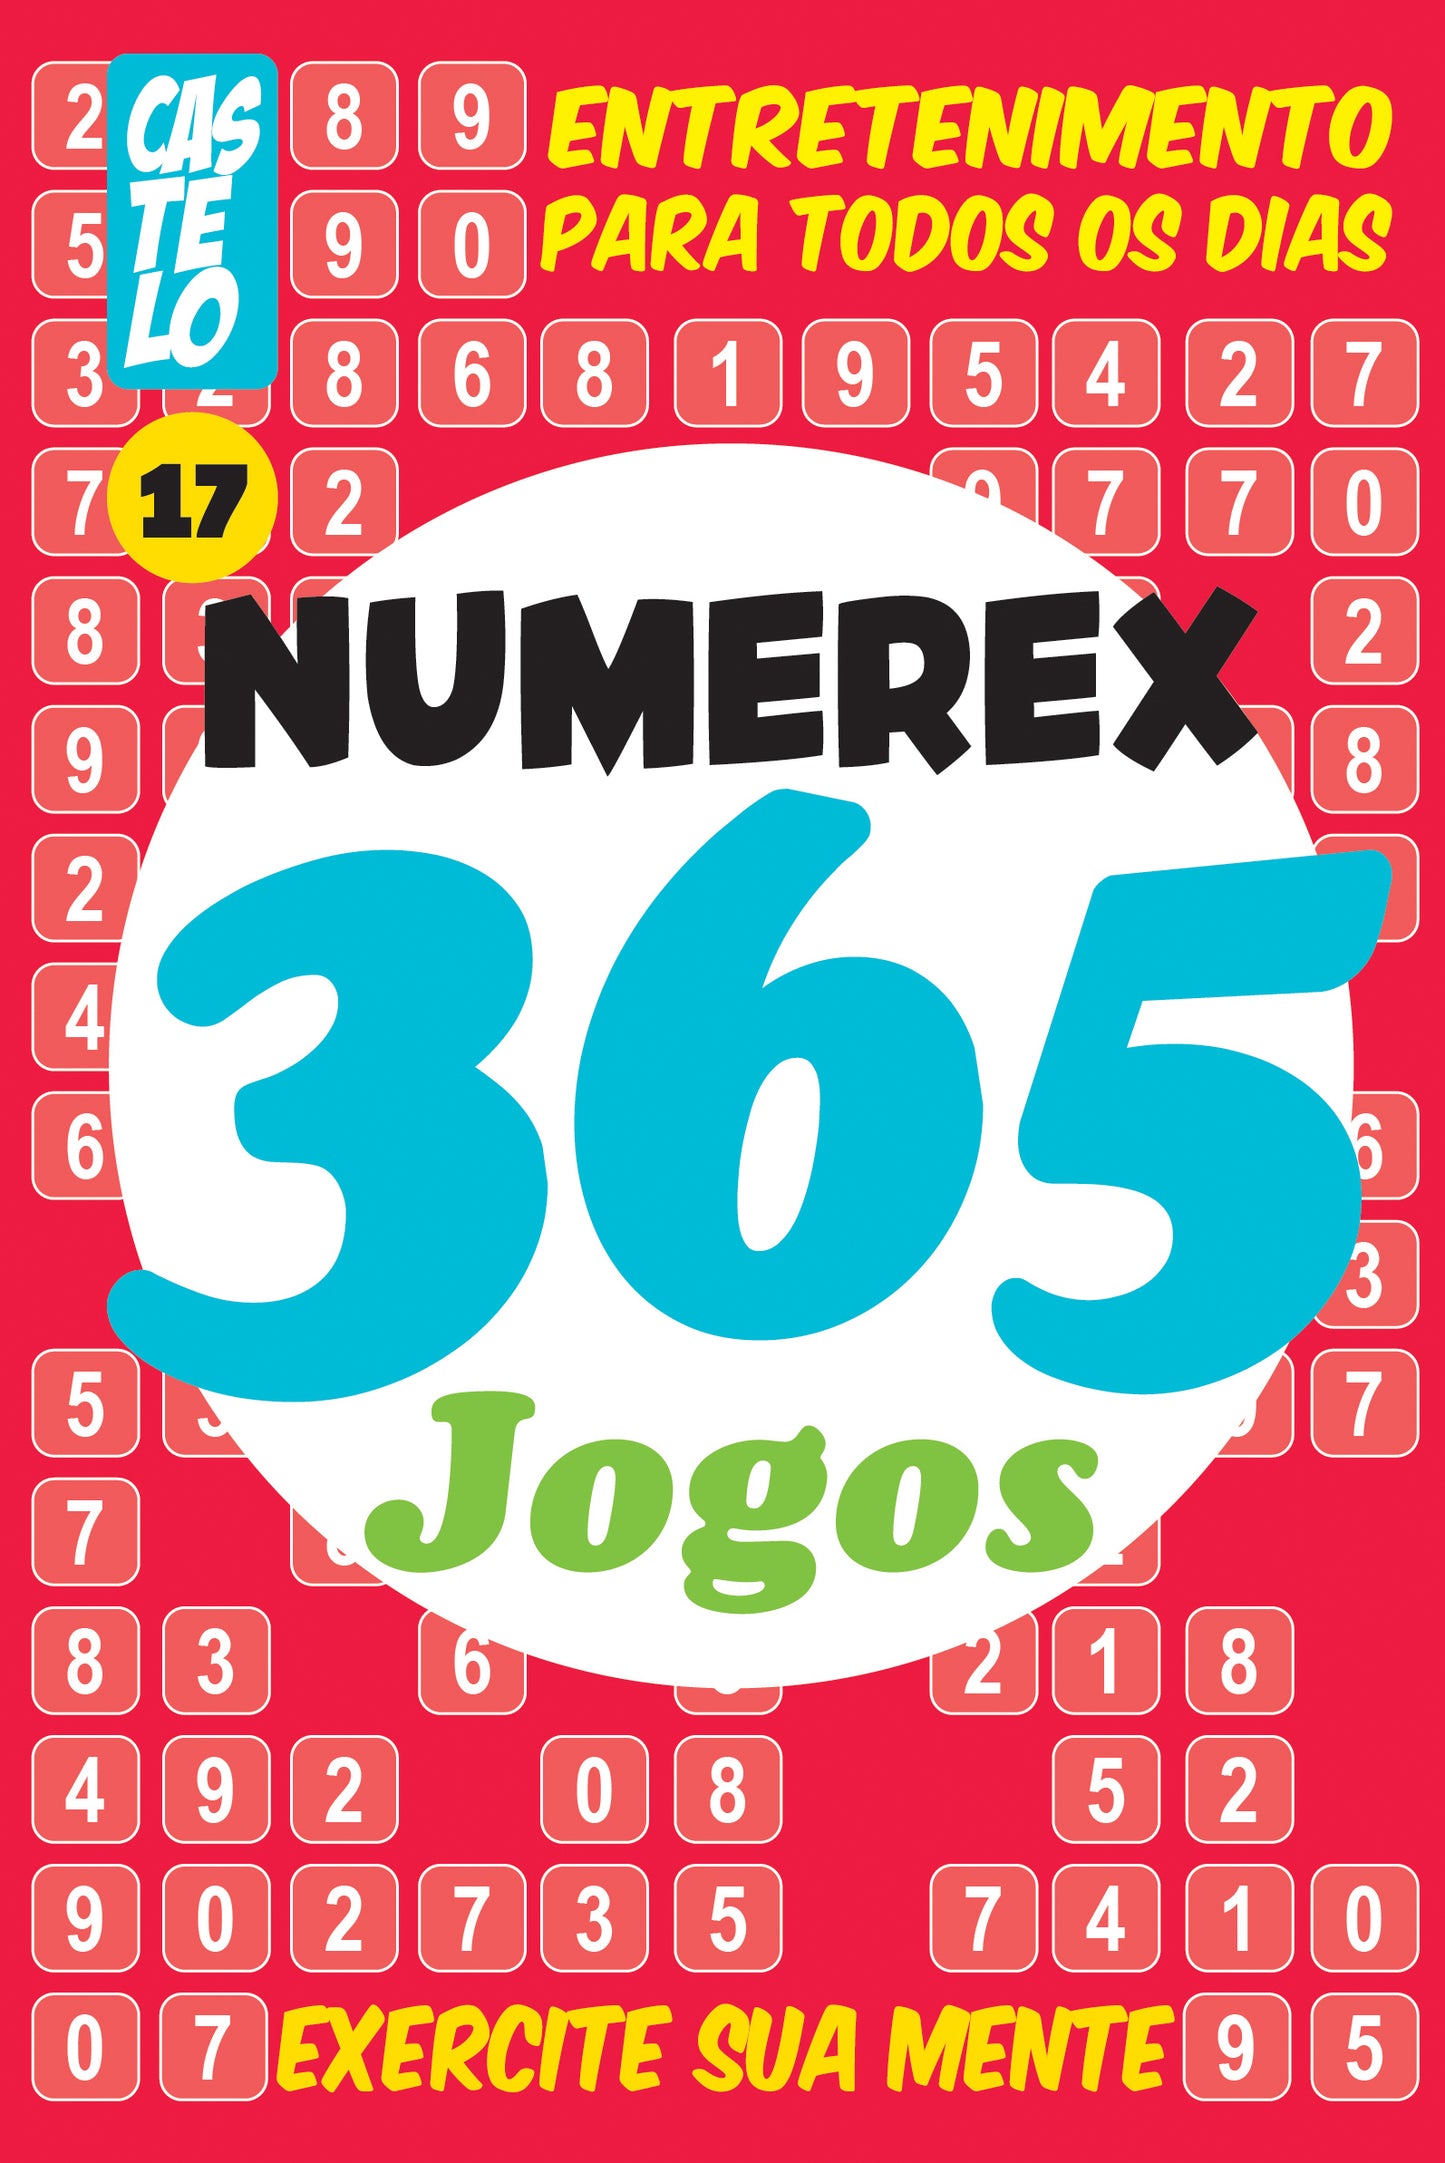 Numerex 365 Edição 17